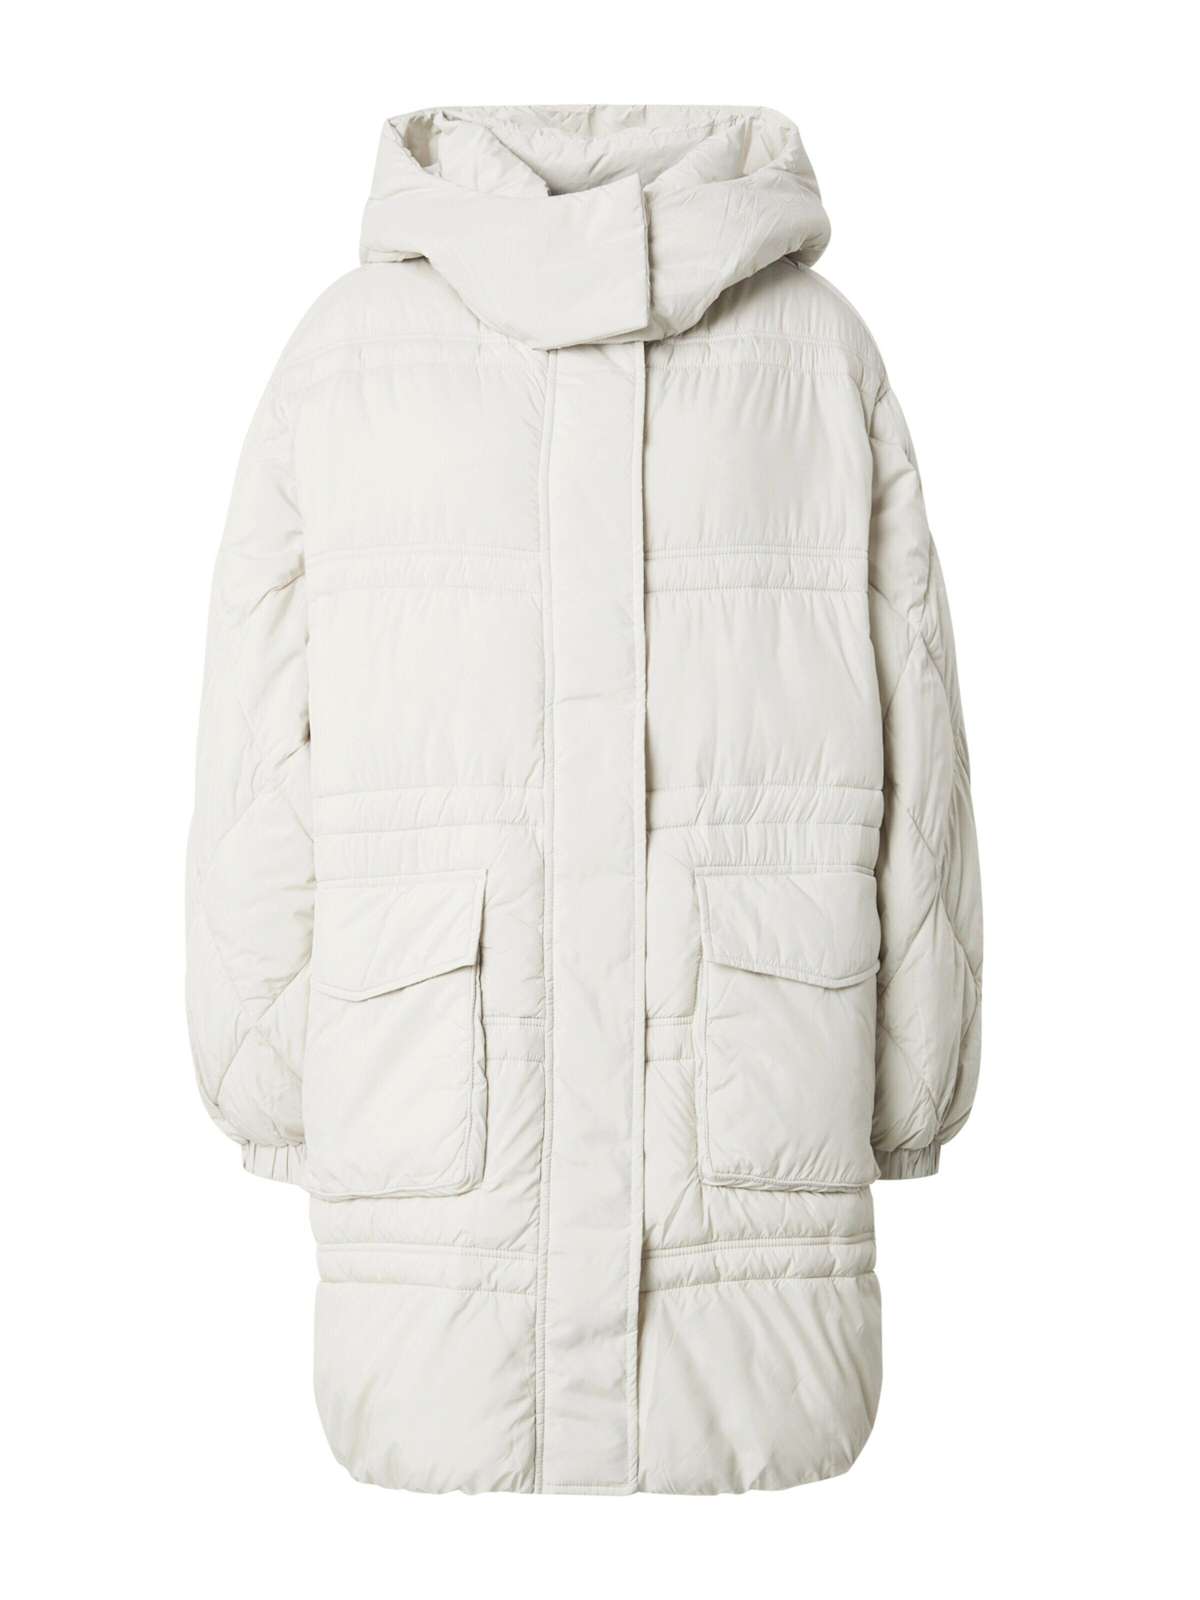 edc by стеганое пальто из переработанного сырья: стеганое пальто с капюшоном